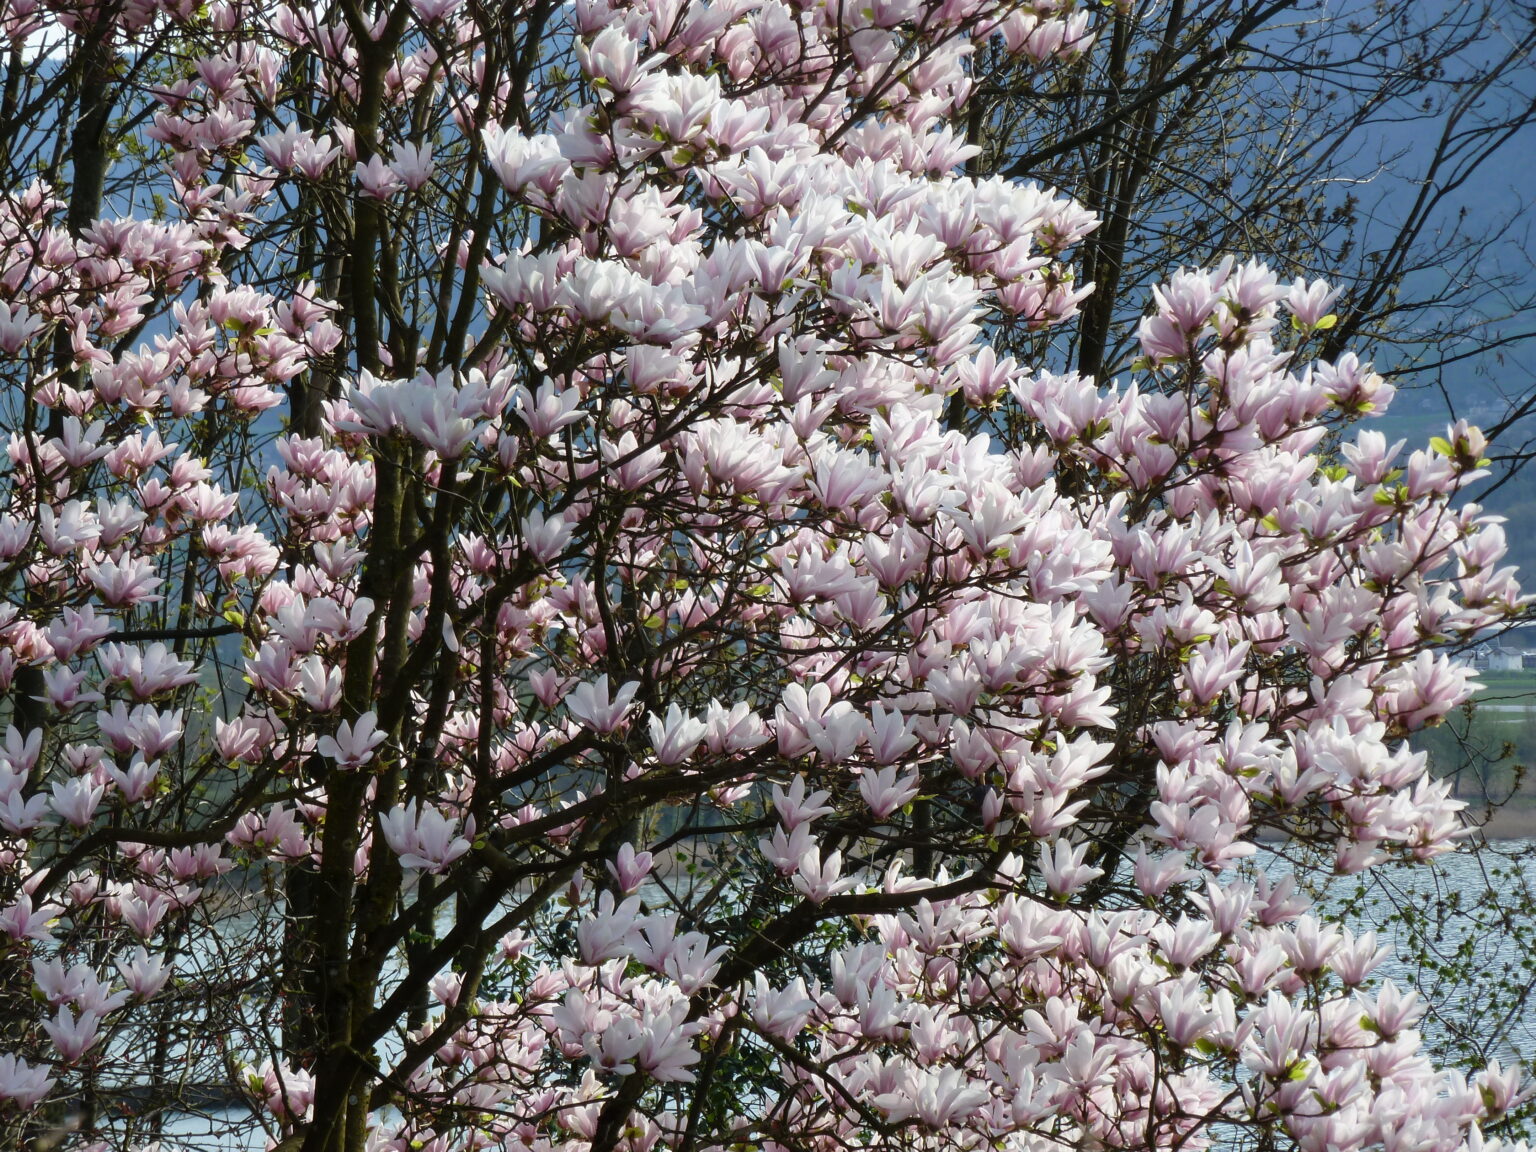 Arbre le magnolia à fleurs roses : floraison du printemps, situé au bord du lac du Bourget en Savoie